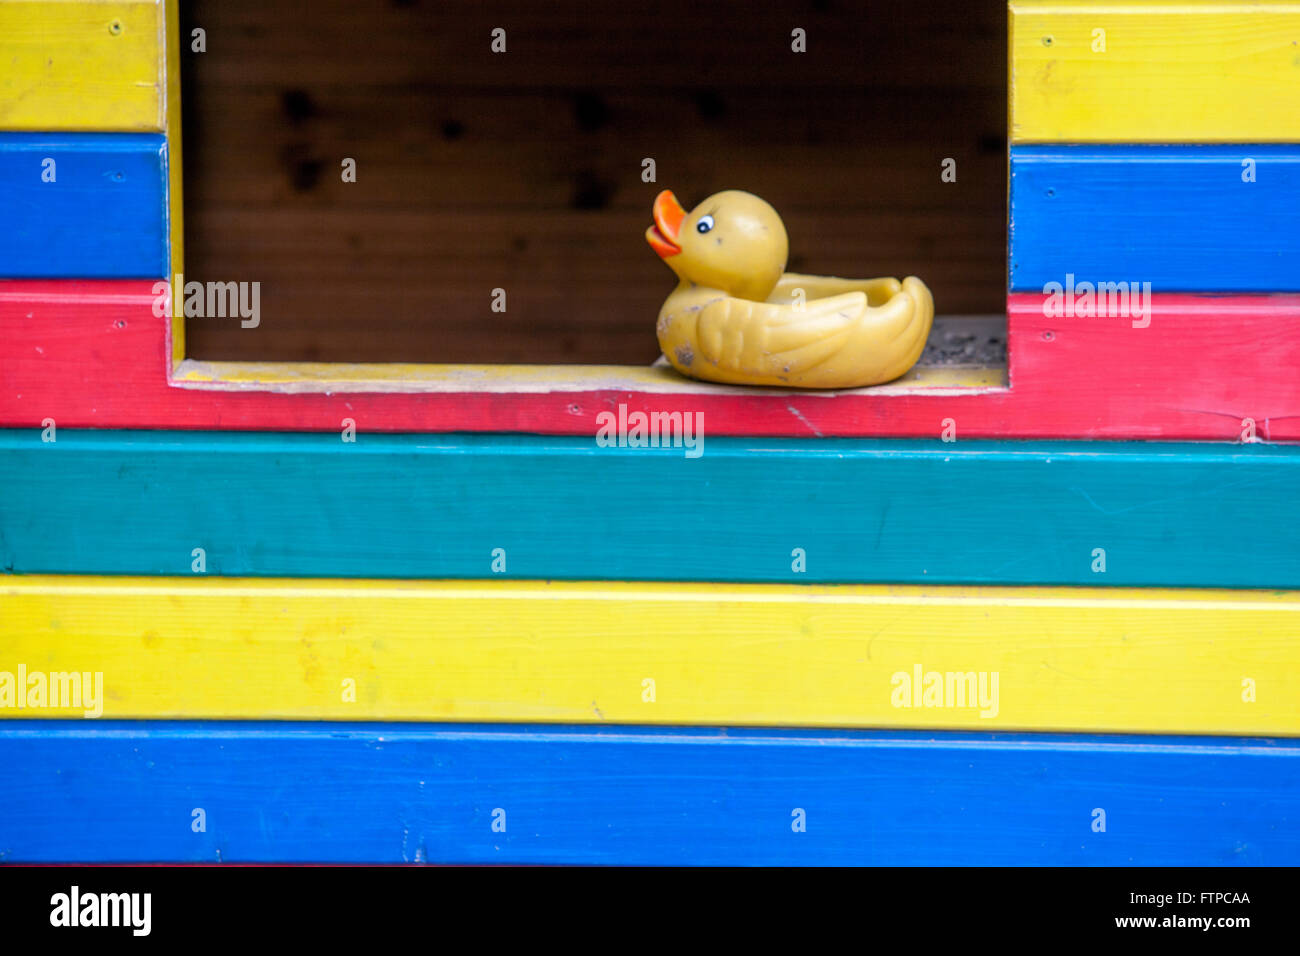 Canard en caoutchouc, jouet en plastique sur une fenêtre en bois colorée à rayures maison de cubby Banque D'Images